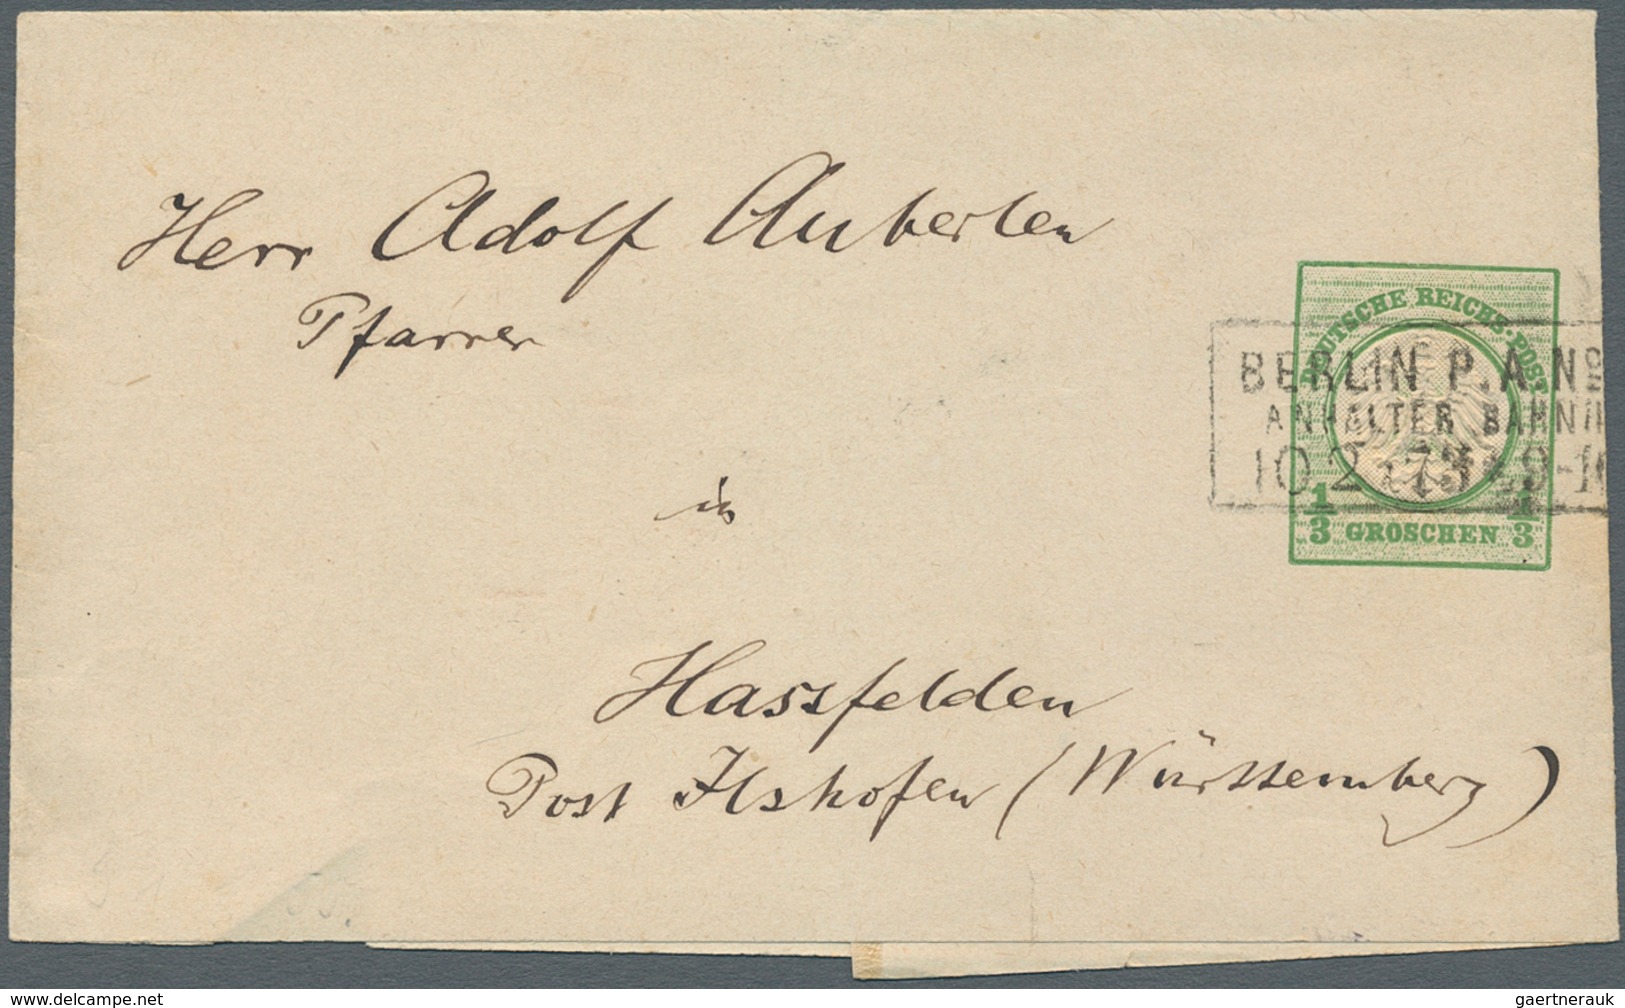 31348 Württemberg - Marken und Briefe: 1853/1920, Partie von ca. 120 Briefen, Karten und Ganzsachen, zusät